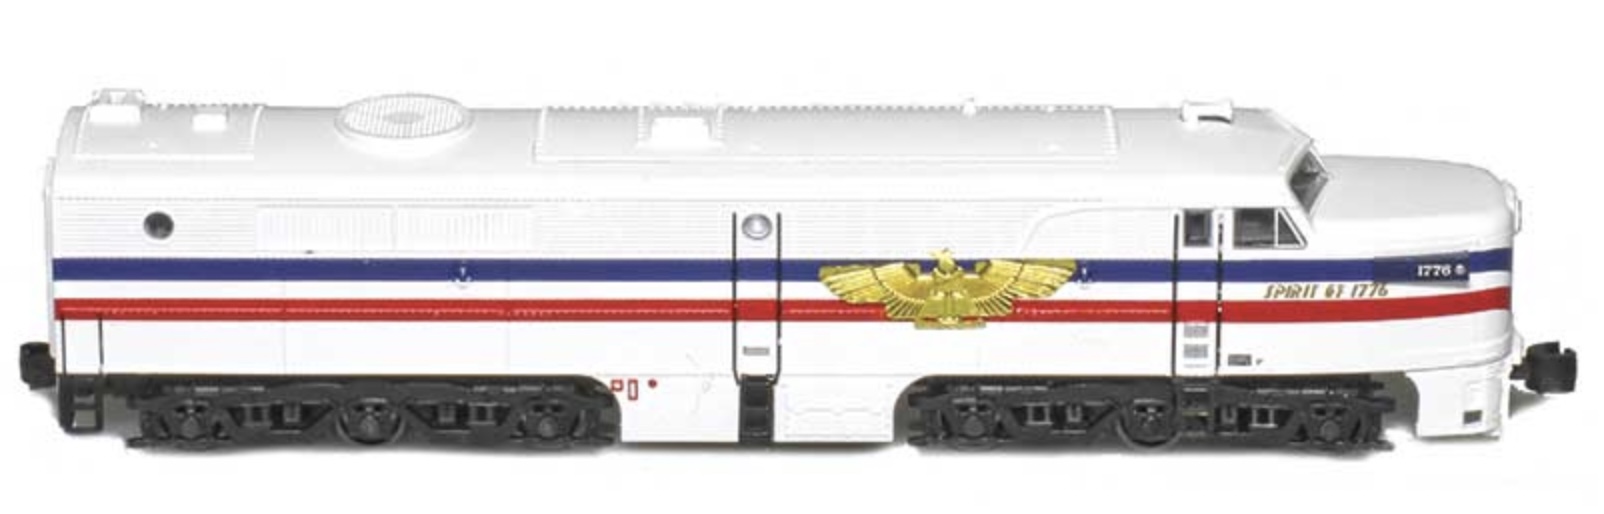 Z Scale - AZL - 64423 - Locomotive, Diesel, Alco PA/PB - Freedom Train - 1776